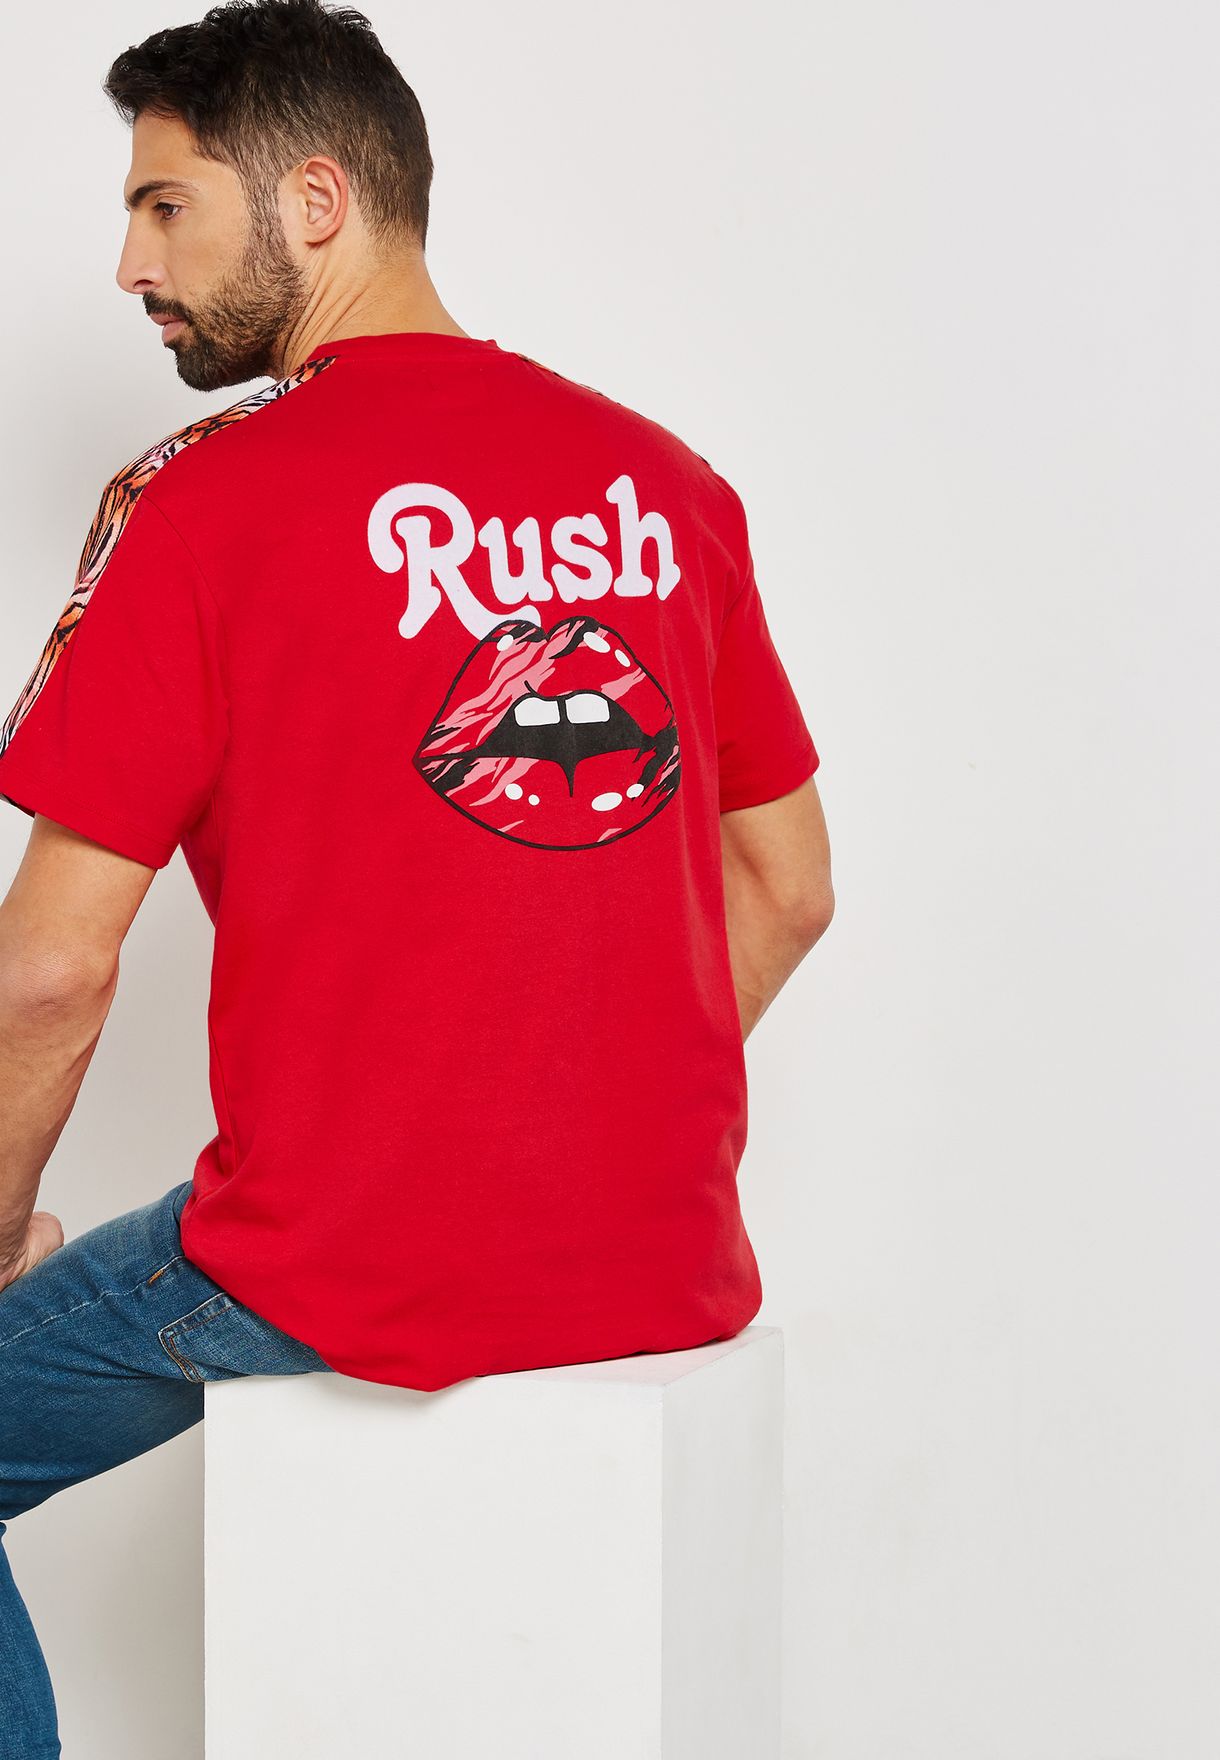 red rush t shirt